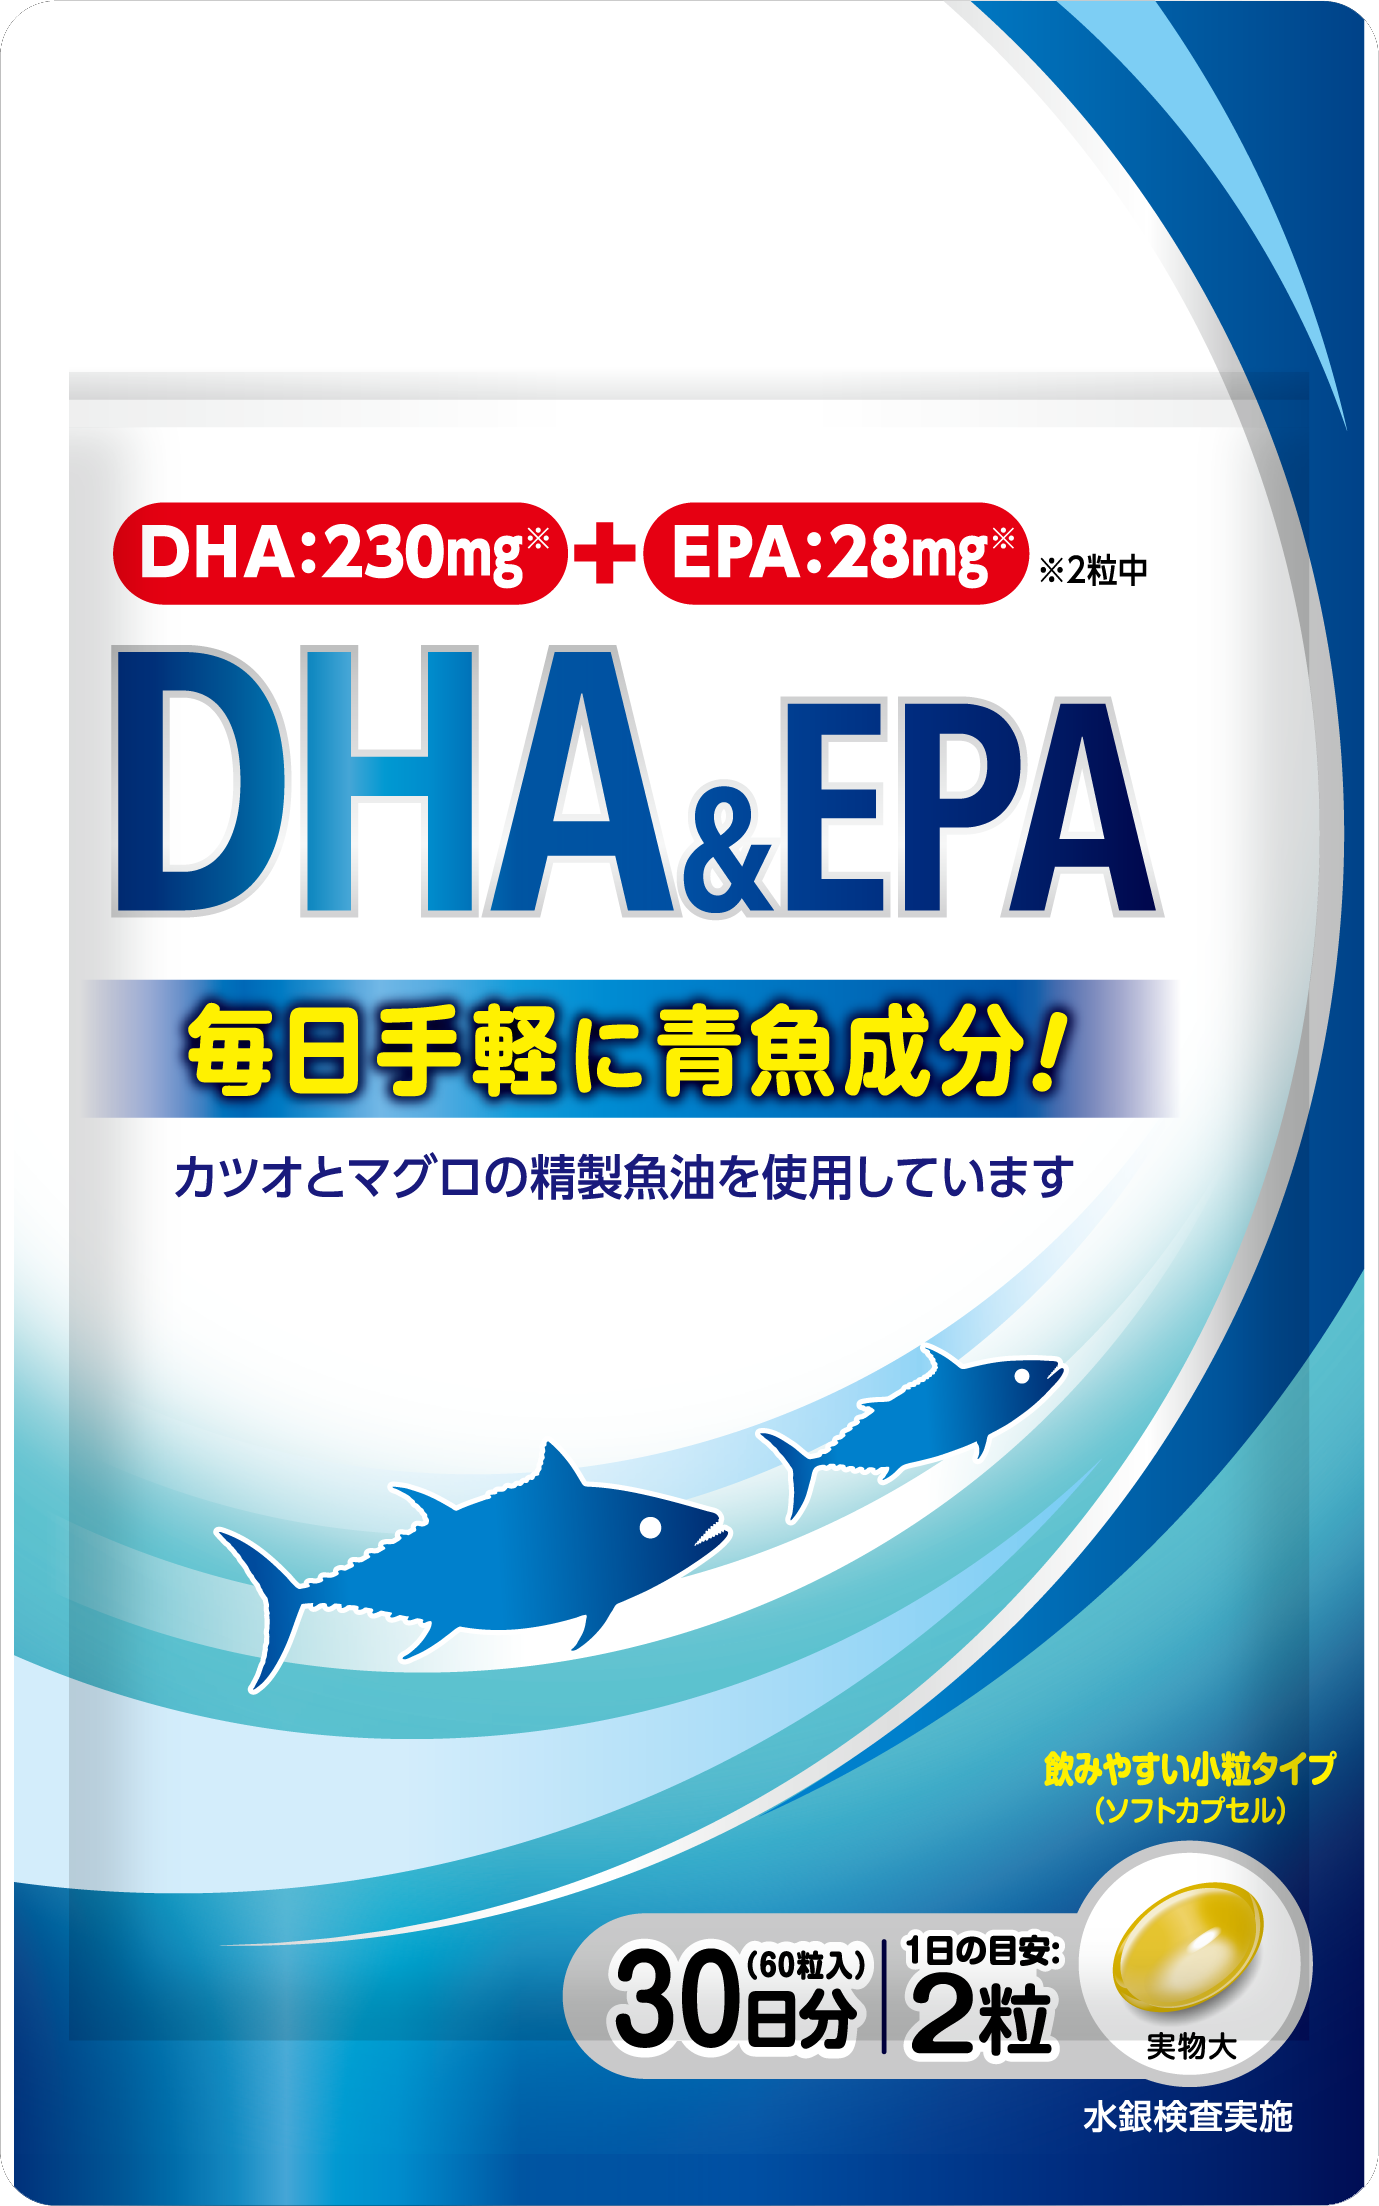 充実した毎日を青魚のパワーでサポート Dha Epa 新発売のご案内 雪印ビーンスタークのプレスリリース